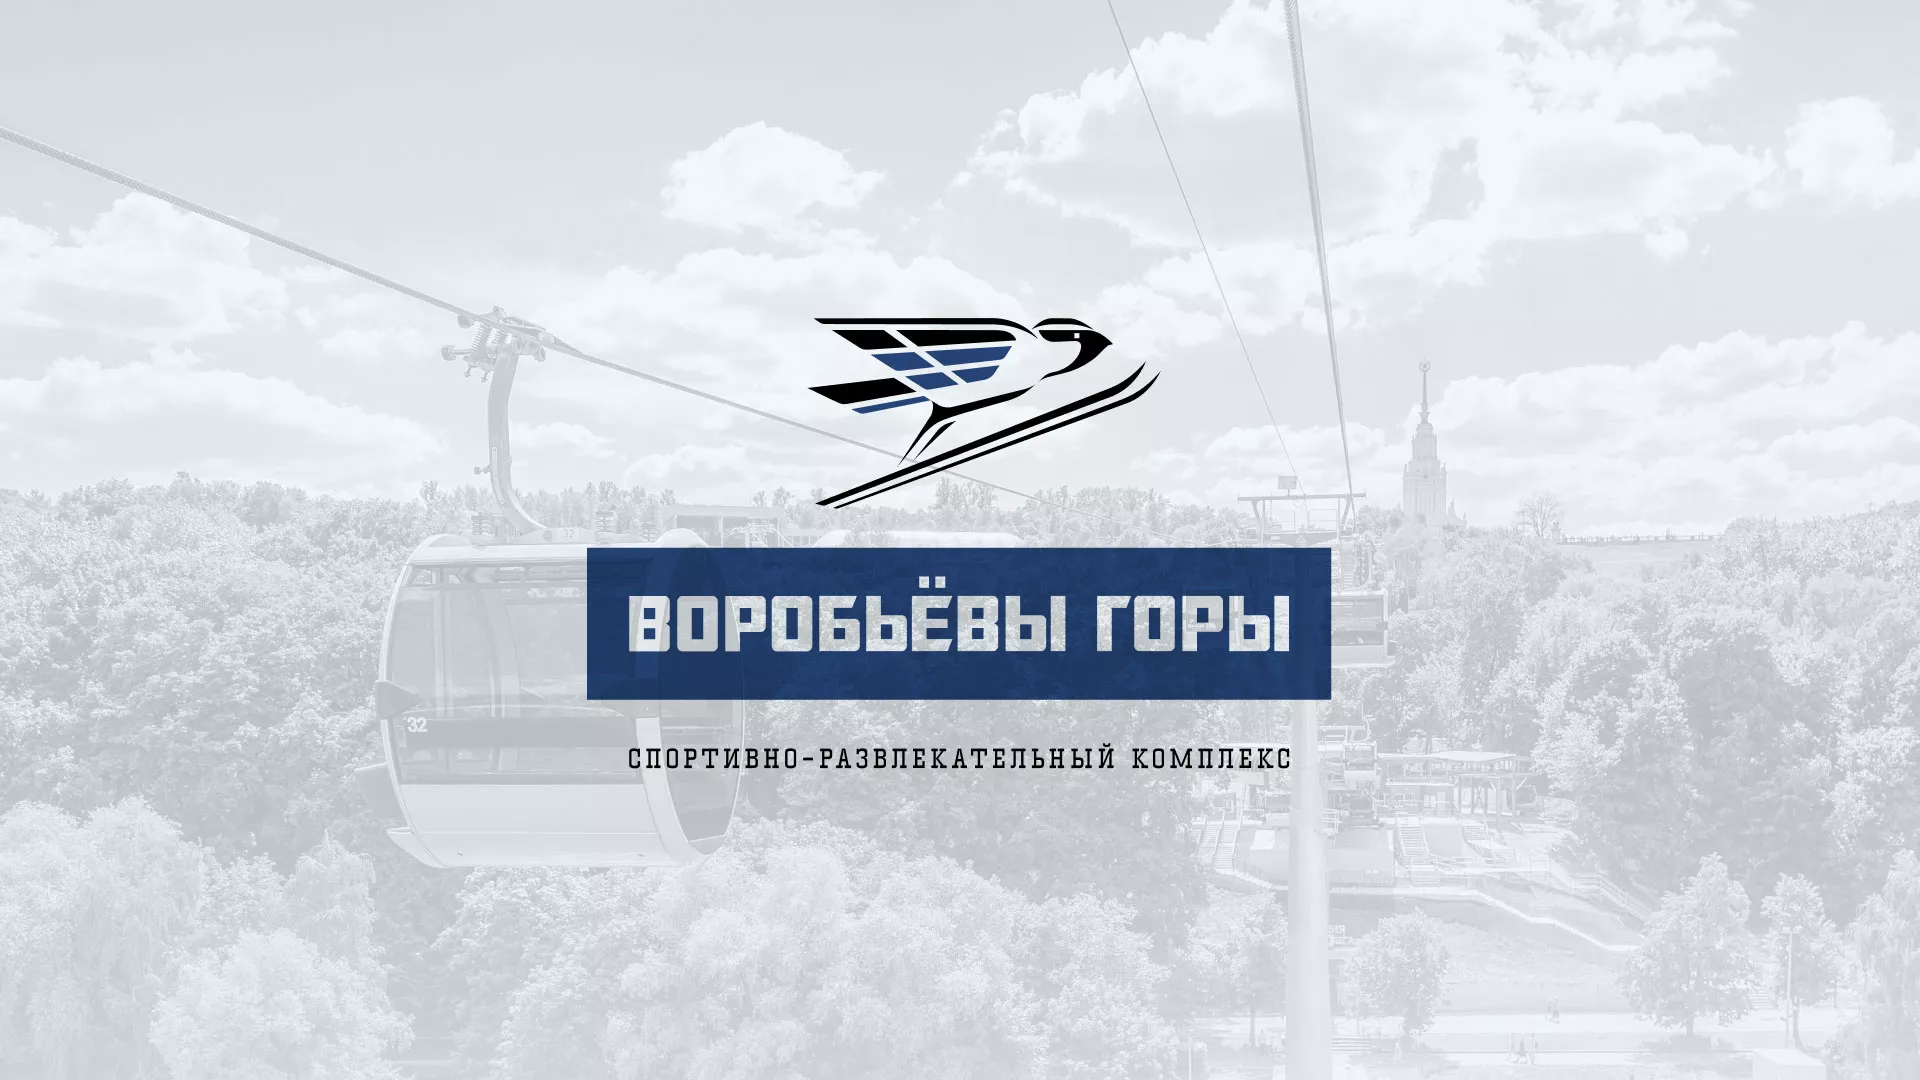 Разработка сайта в Кондрово для спортивно-развлекательного комплекса «Воробьёвы горы»